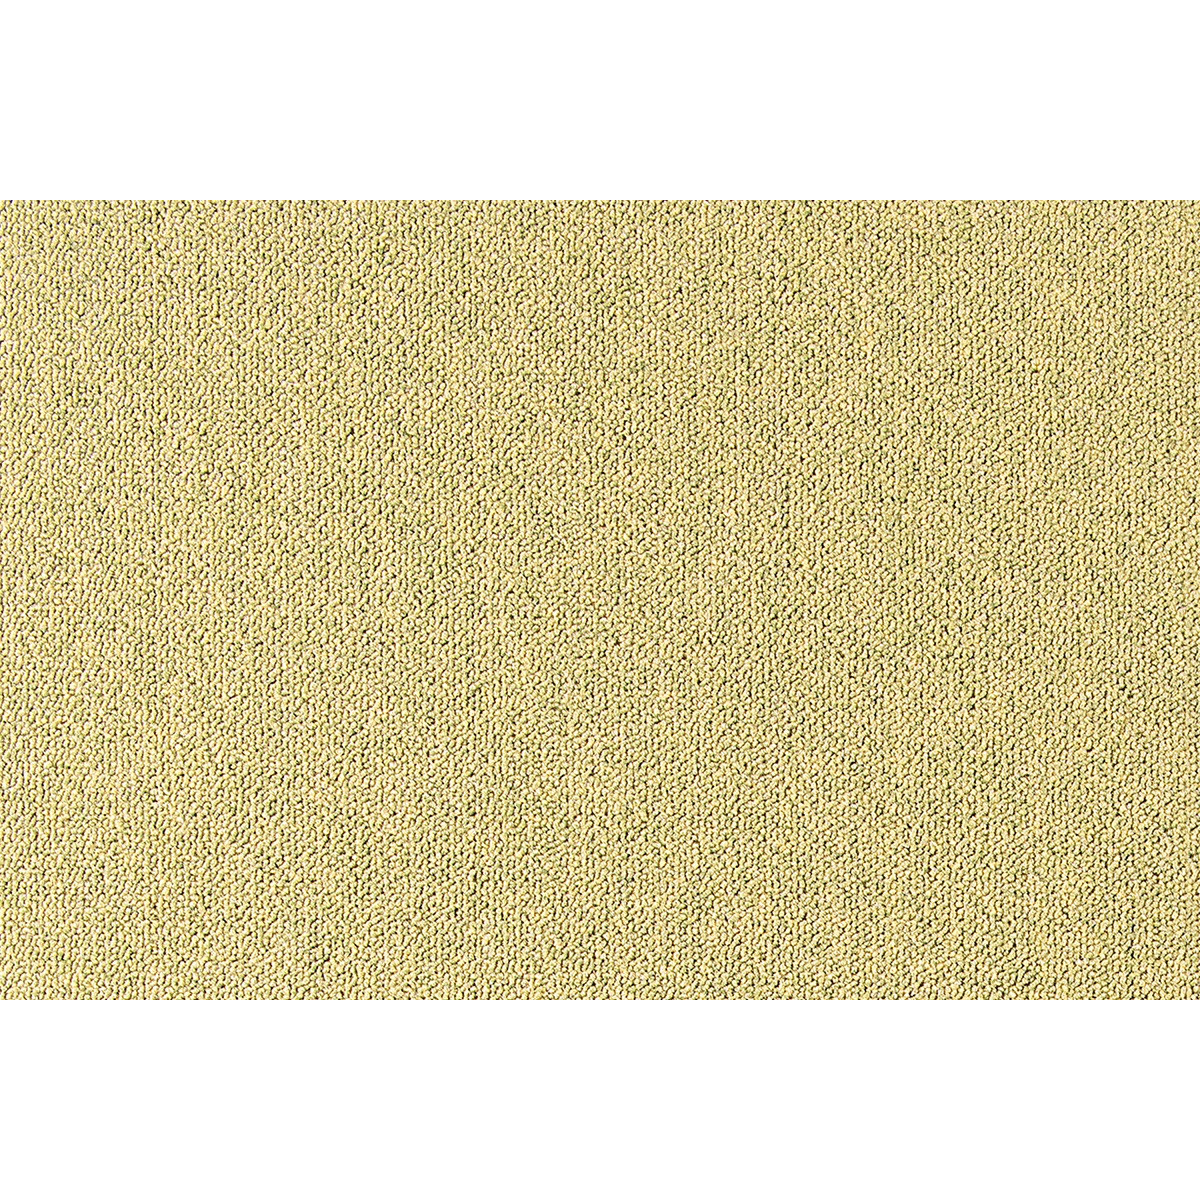 Metrážny koberec Cobalt SDN 64090 - AB žlto-zelený, záťažový